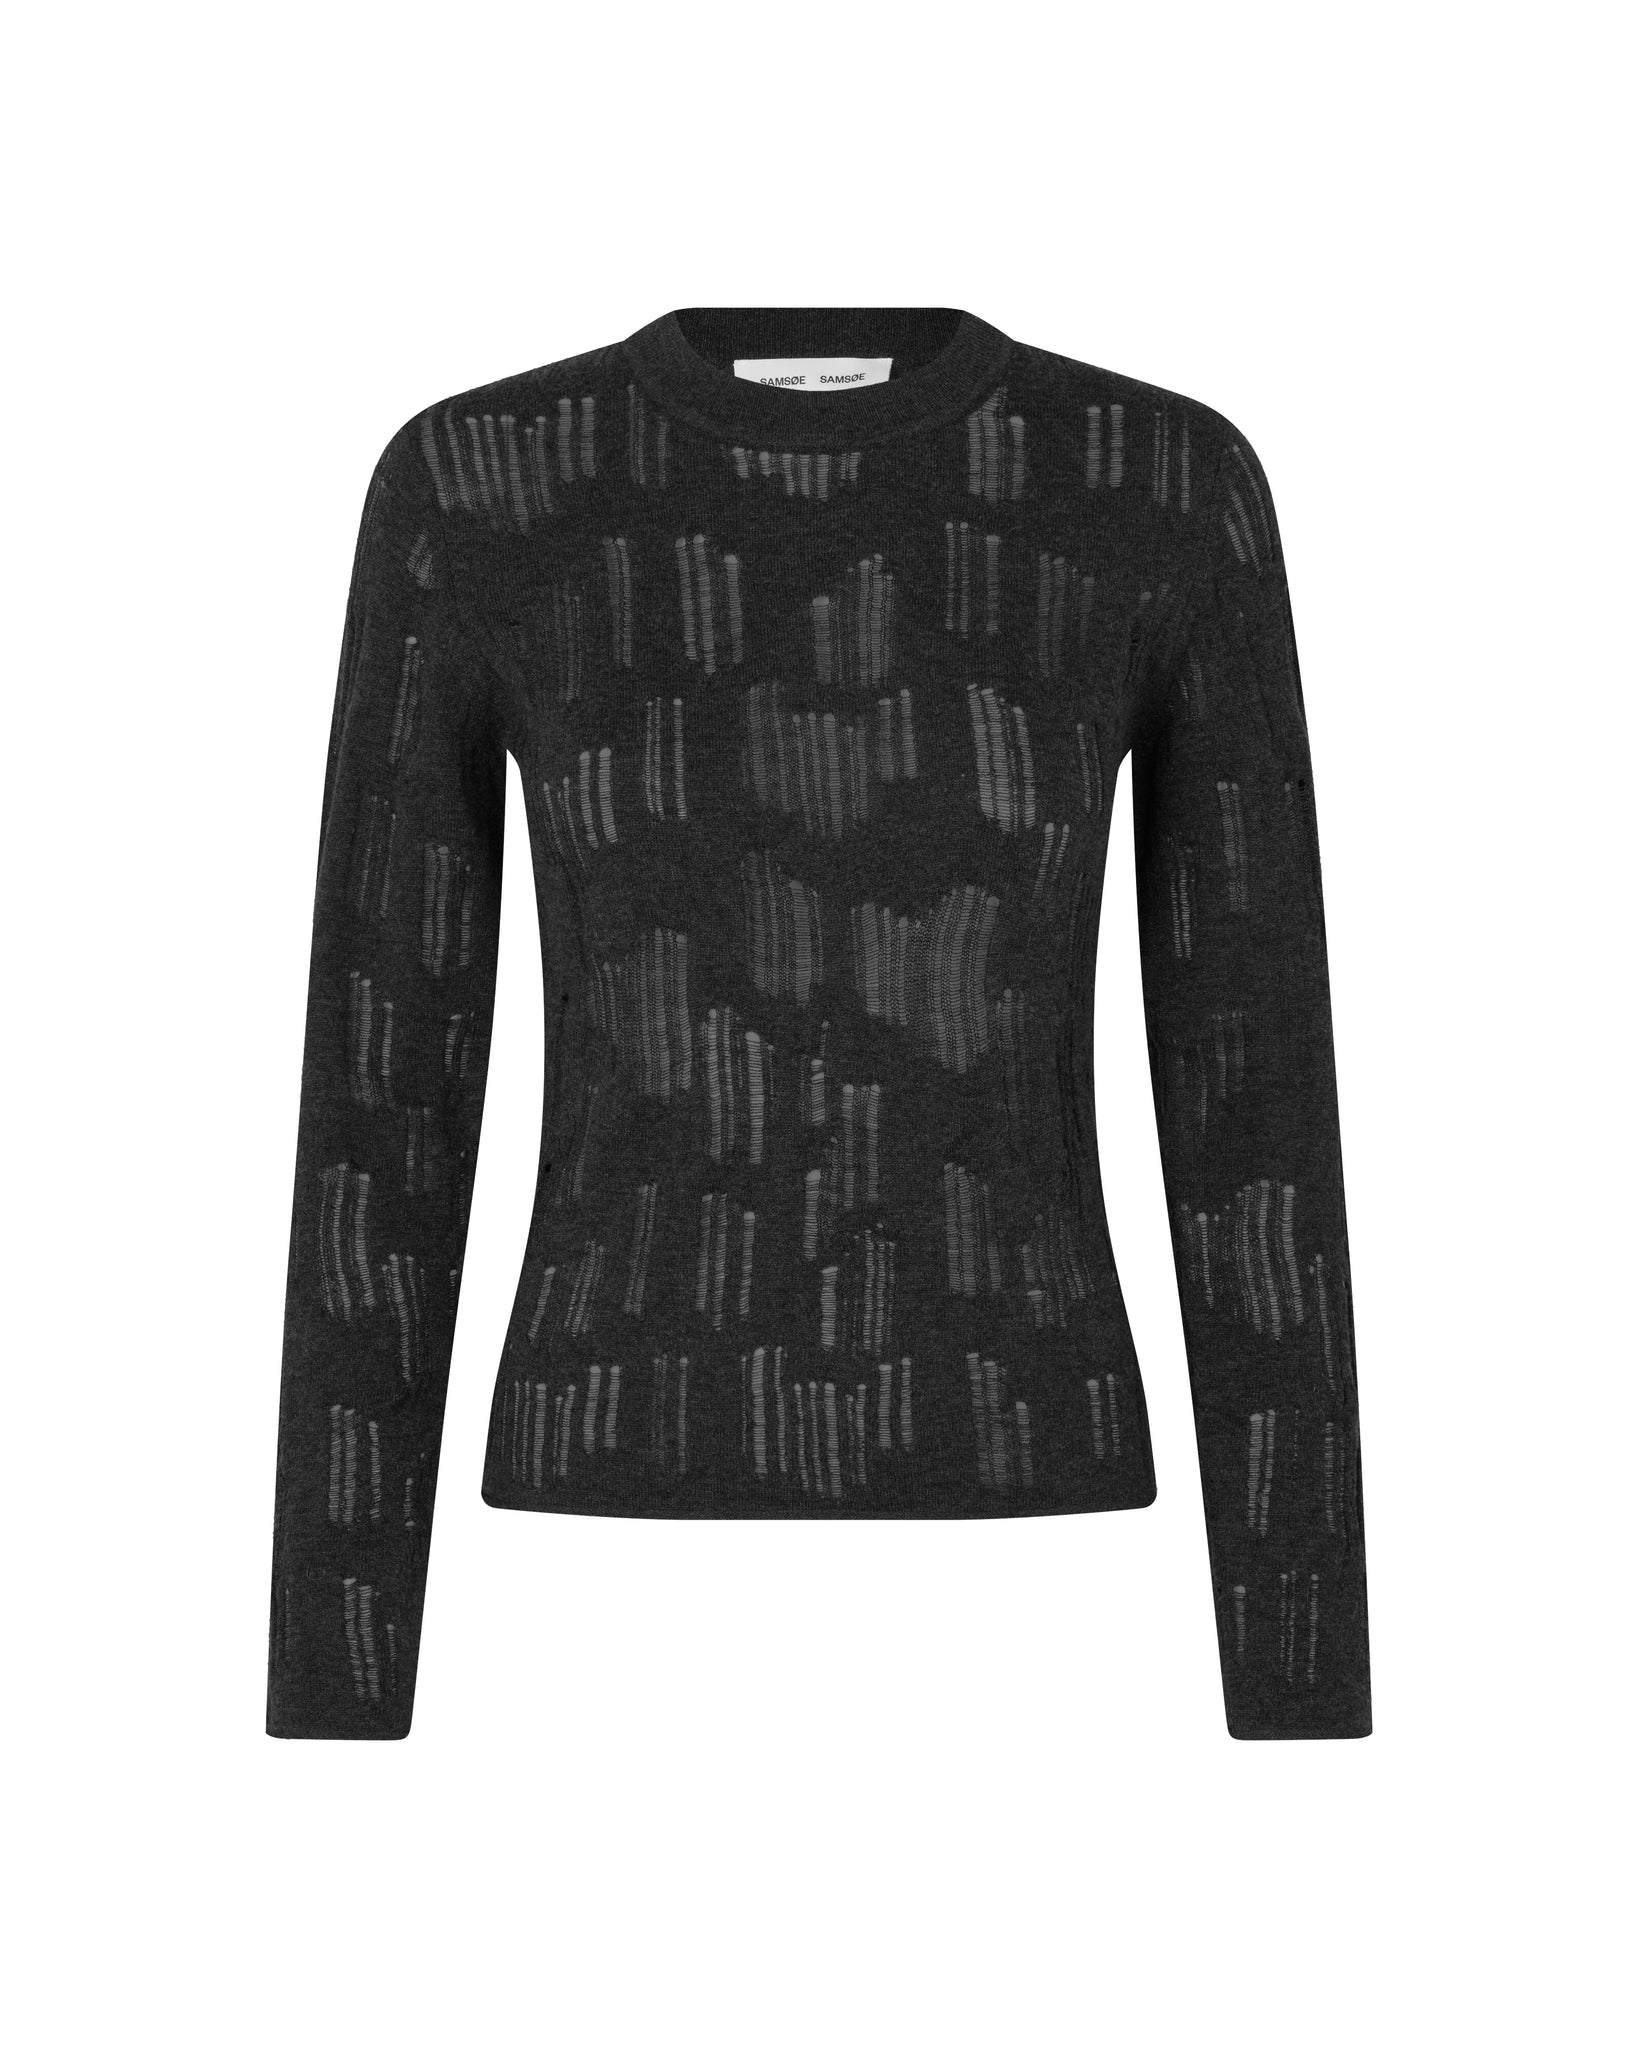 Louise Crew Neck sweater 14950 - Phantom